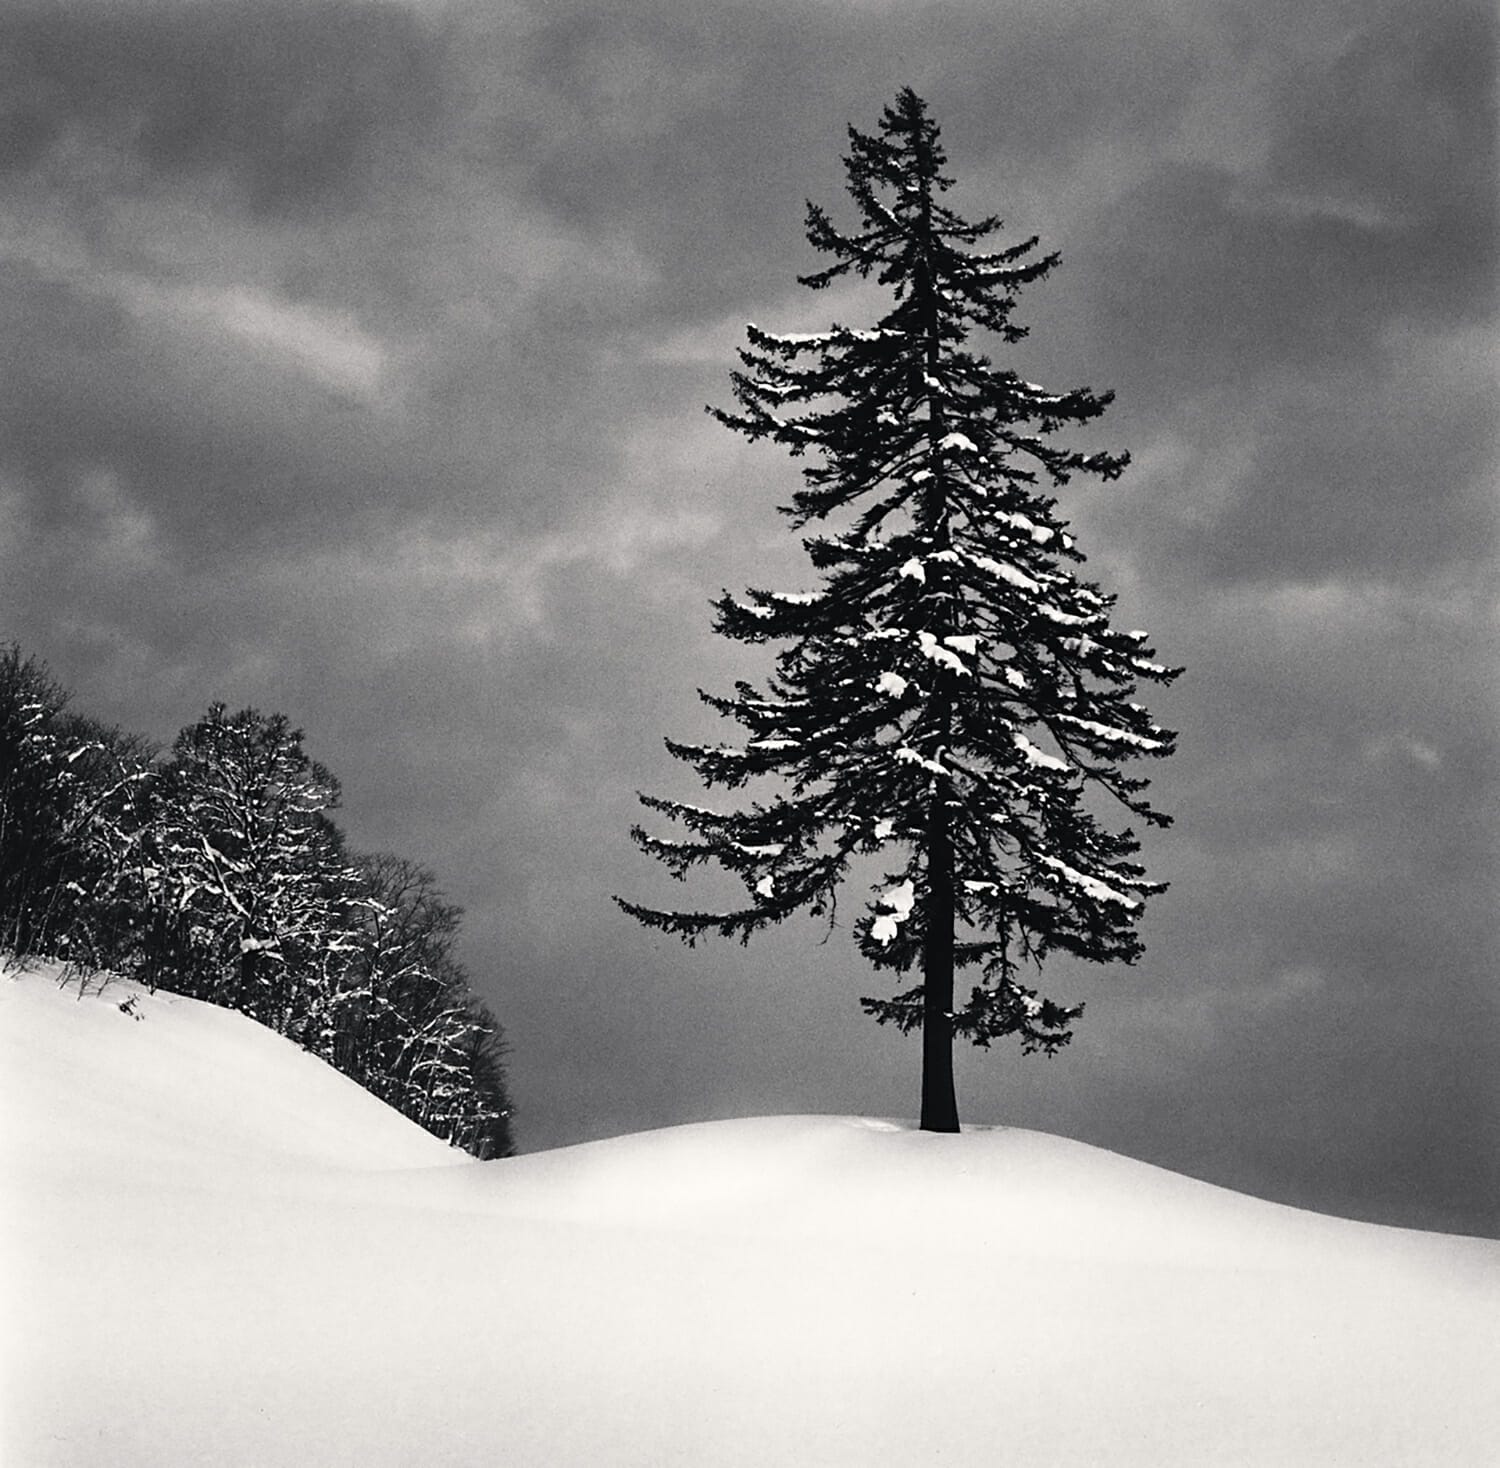 Spruce Tree and Snow Clouds, Esashi, Hokkaido, Japan